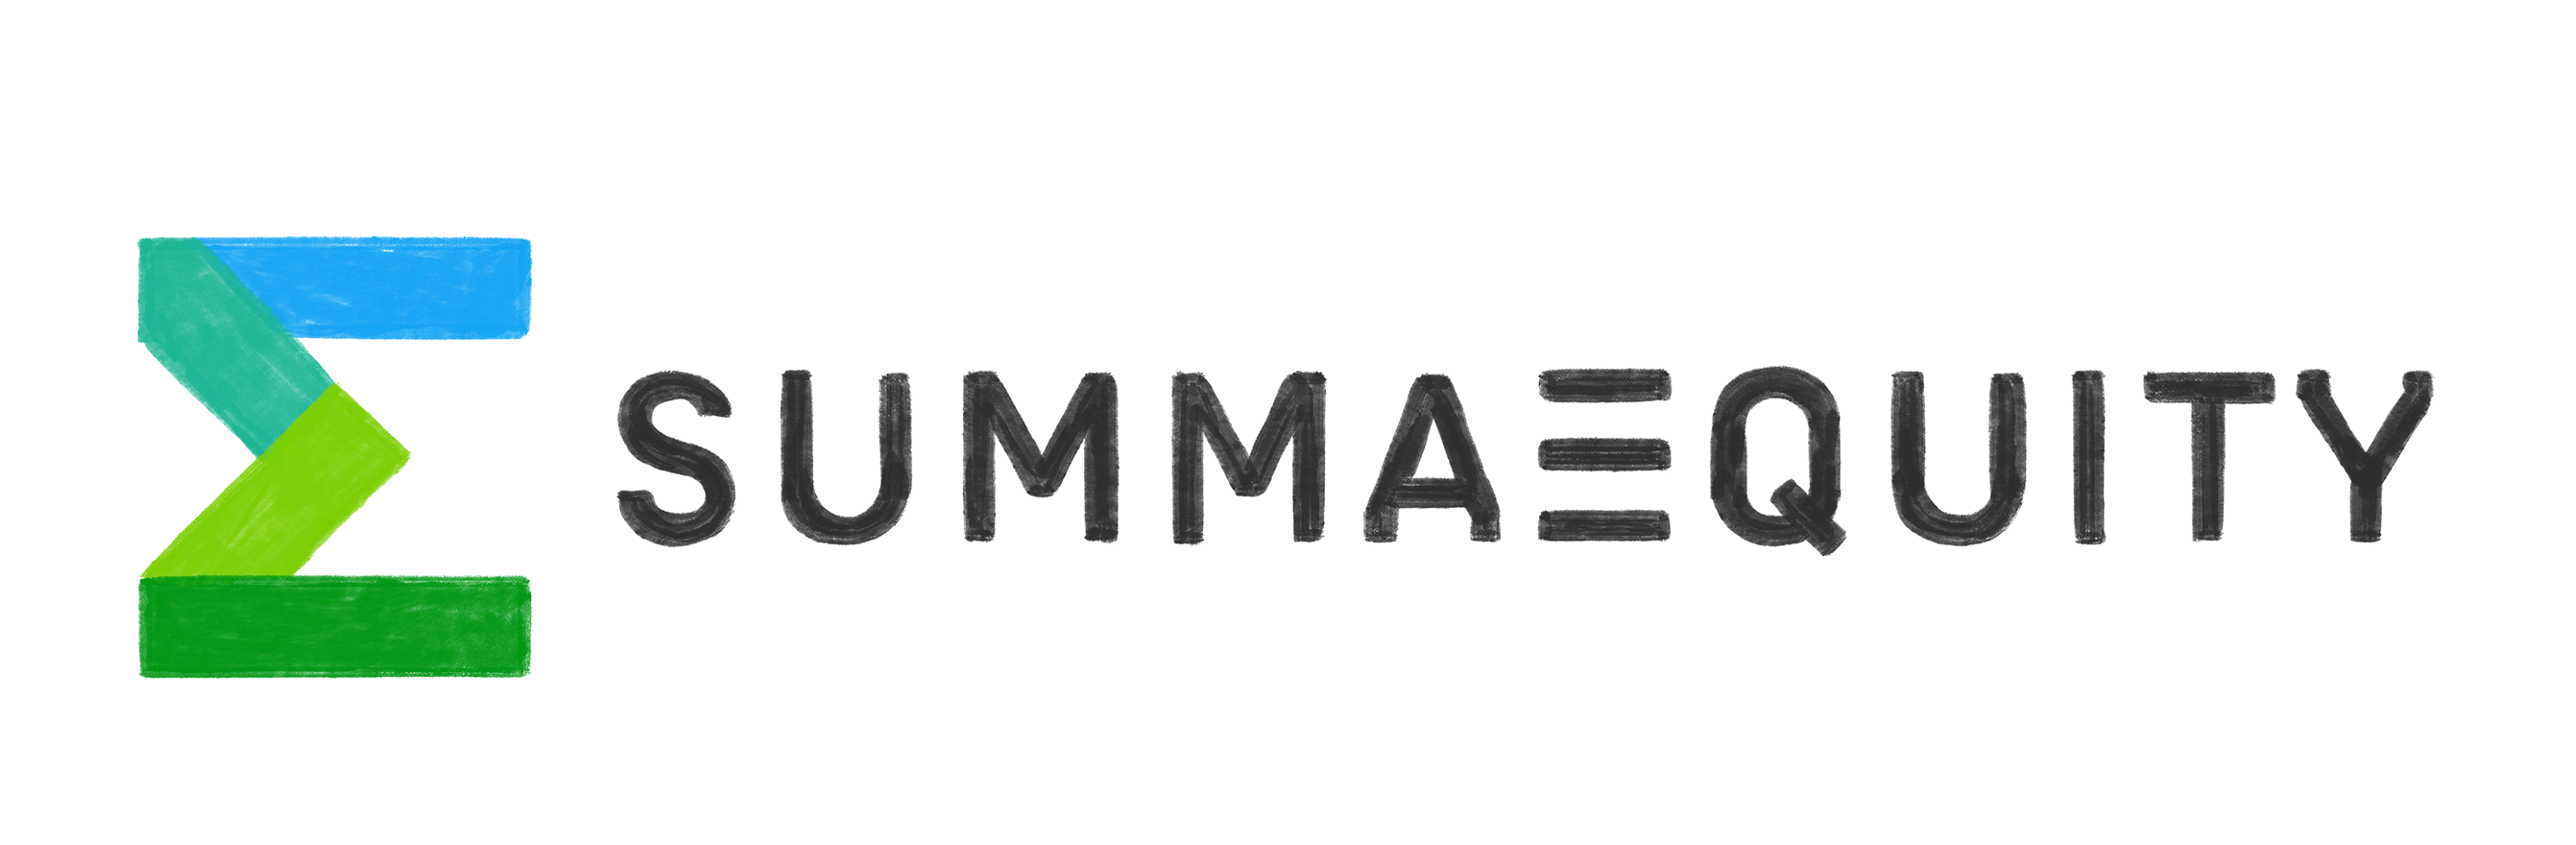 SUMMA EQUITY ADVISORY AS logo